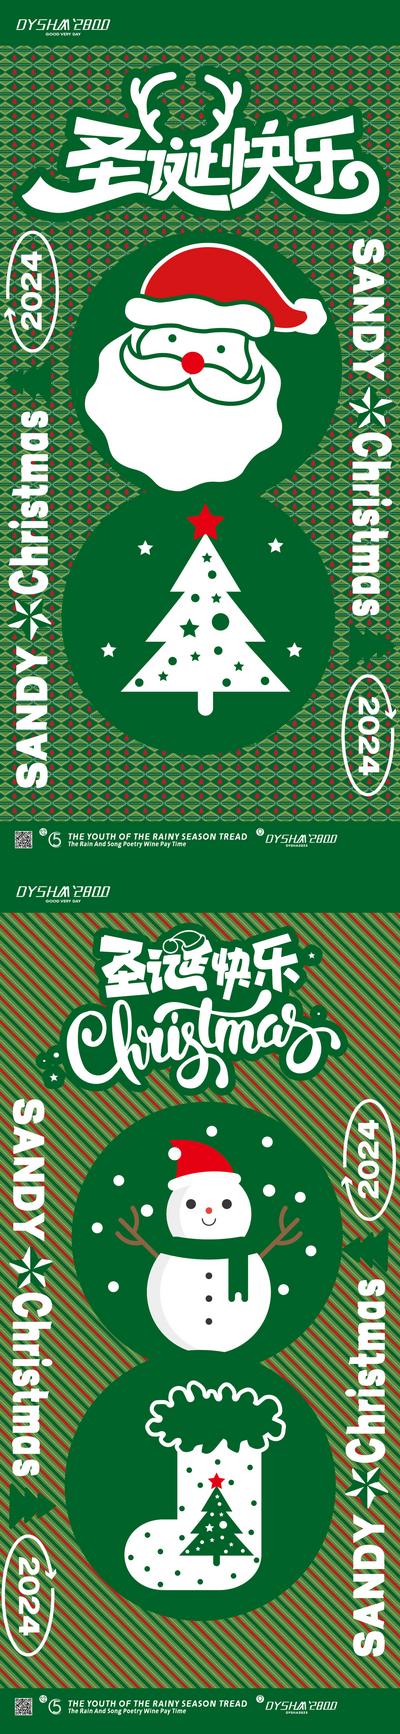 南门网 广告 海报 节日 圣诞节 圣诞树 圣诞老人 帽子 西方节日